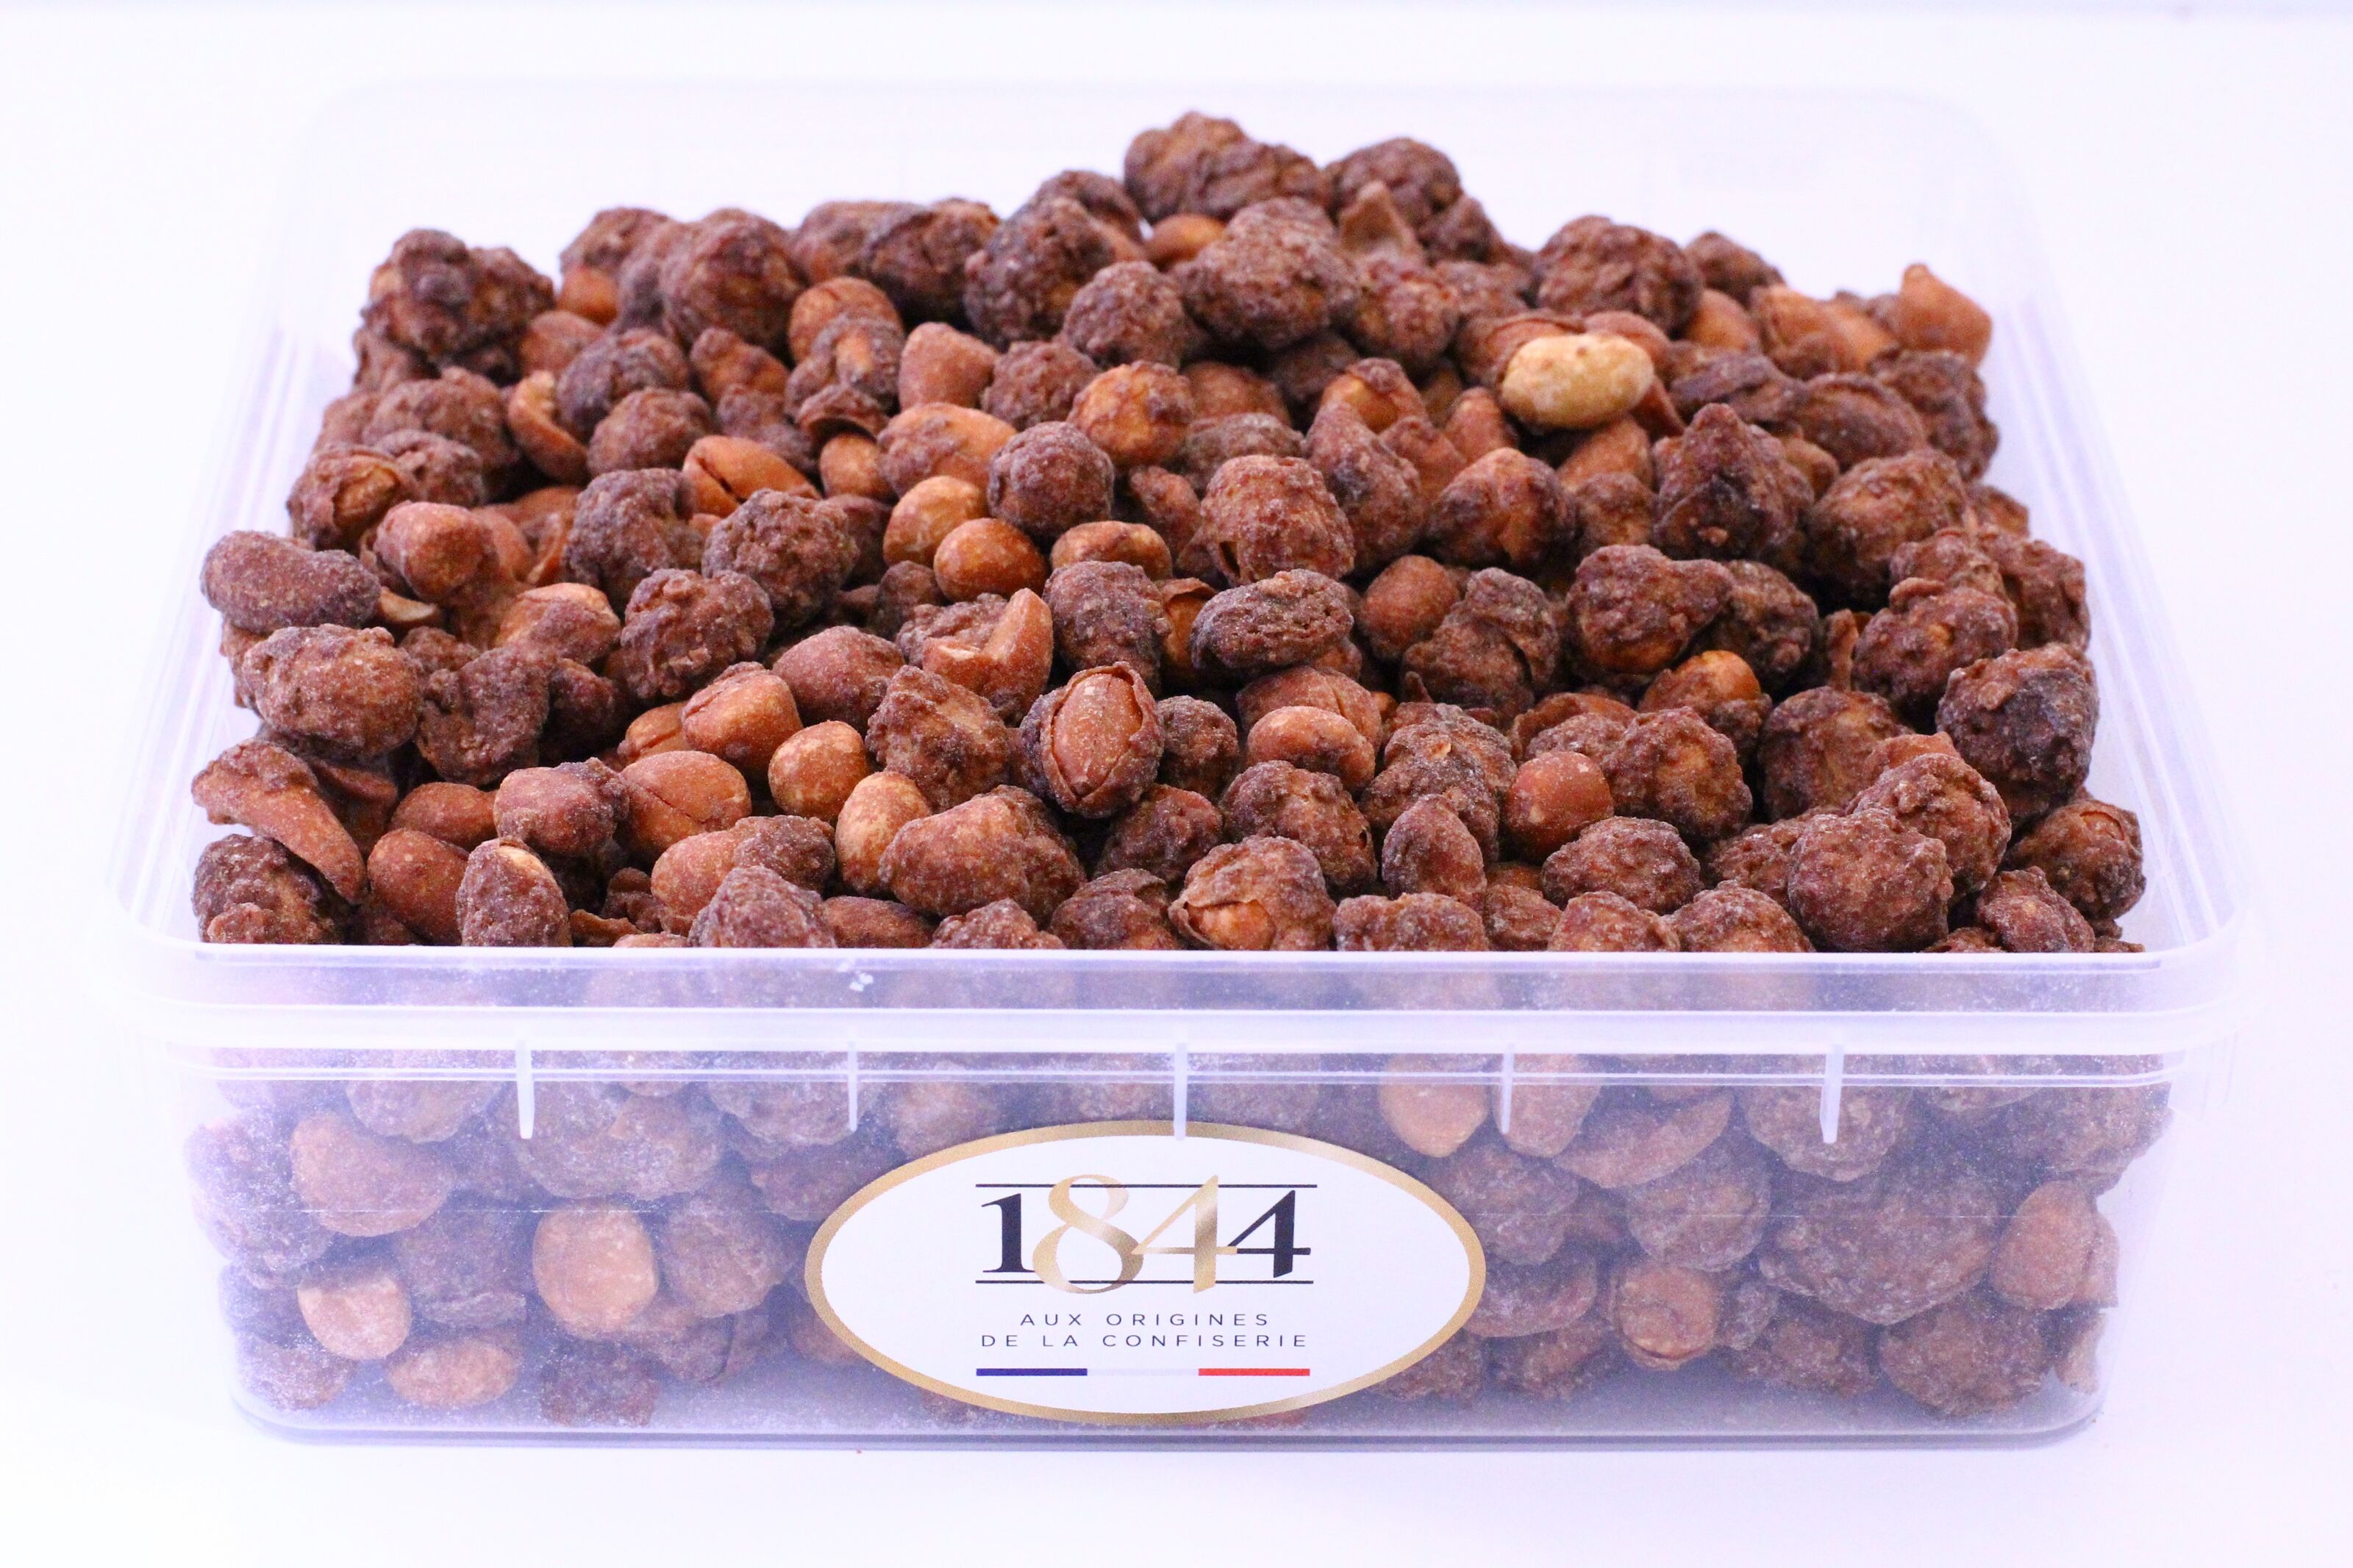 Chouchou - cacahuètes caramélisées - 100 g - Mon Vrac En Ligne